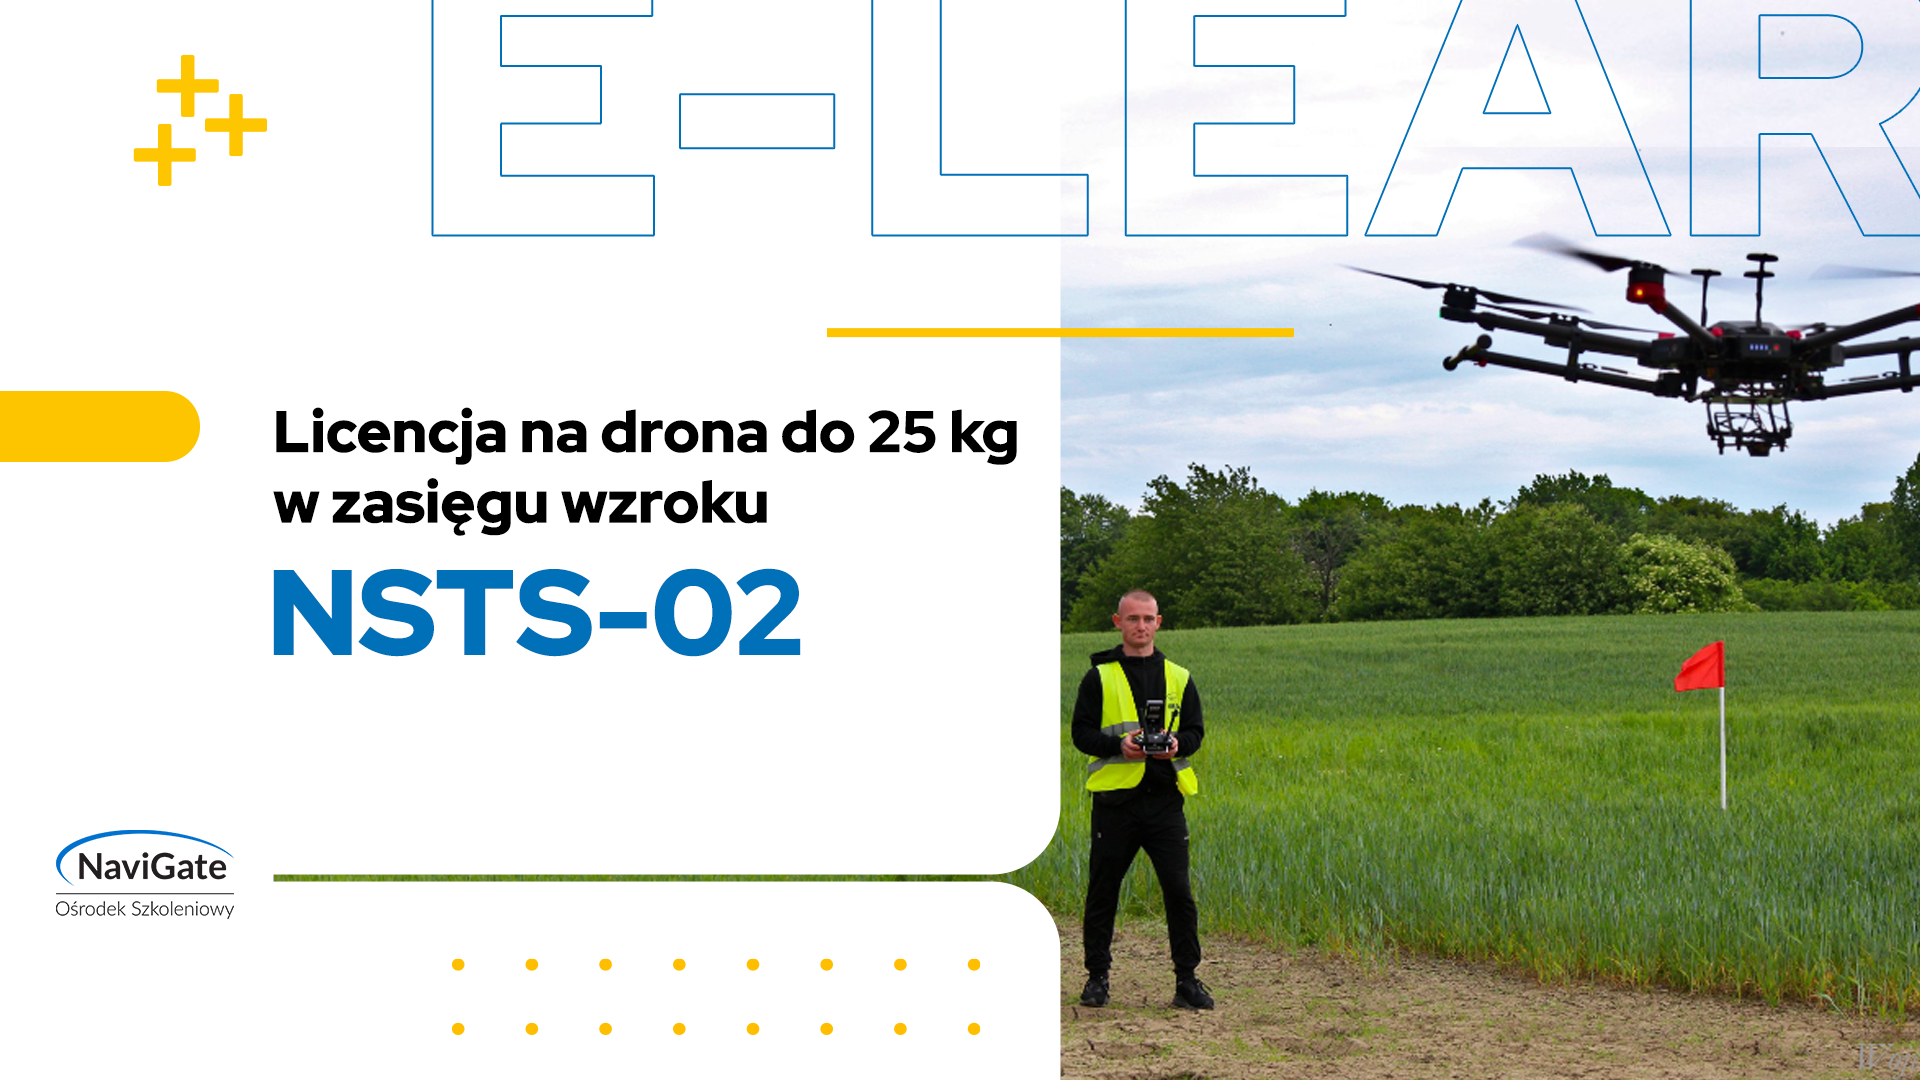 NSTS-02 – licencja na drona do 25 kg w zasięgu wzroku (VLOS)